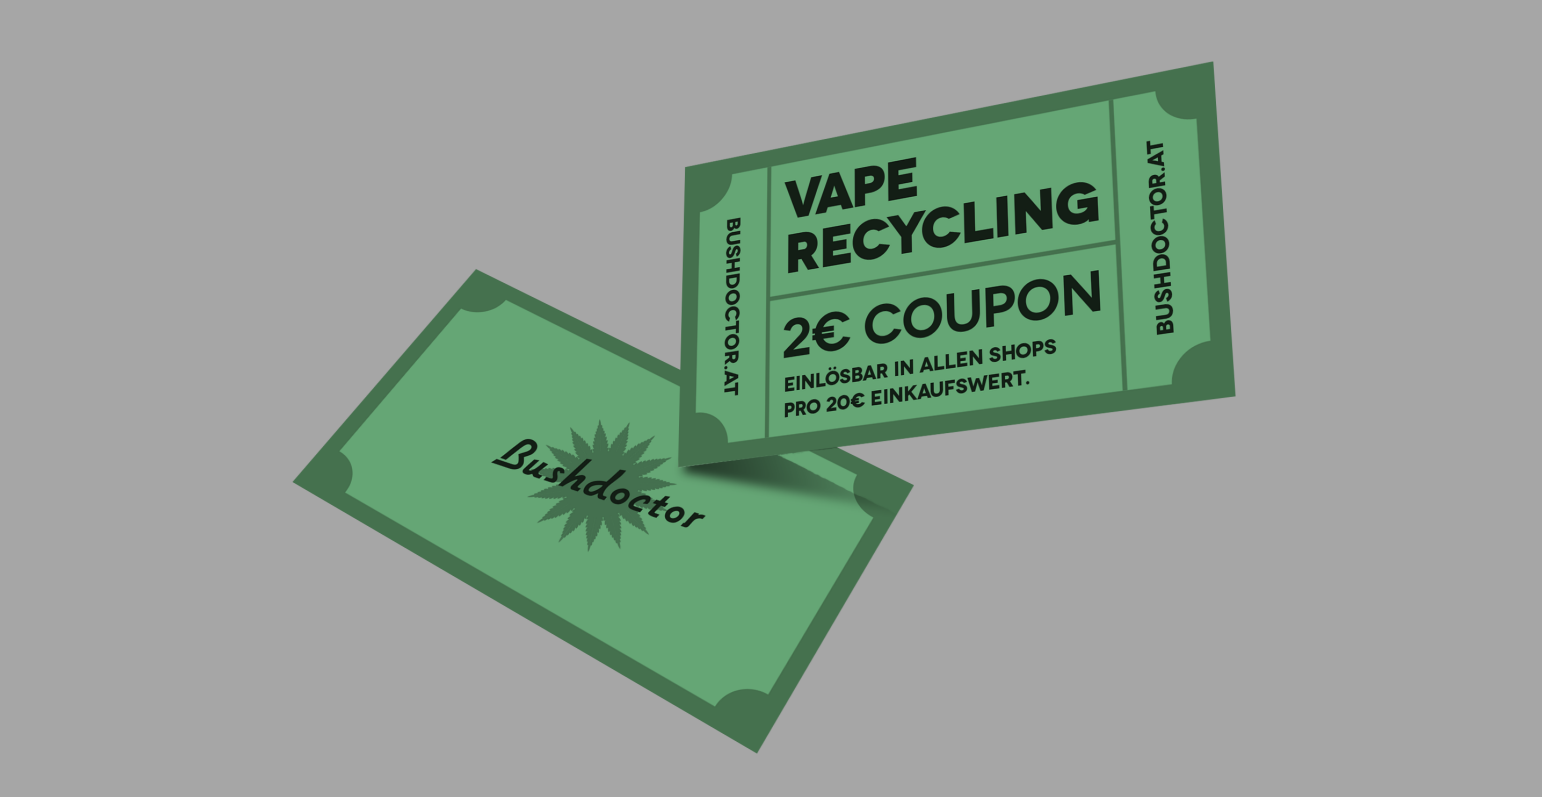 Vape-Recycling coupons